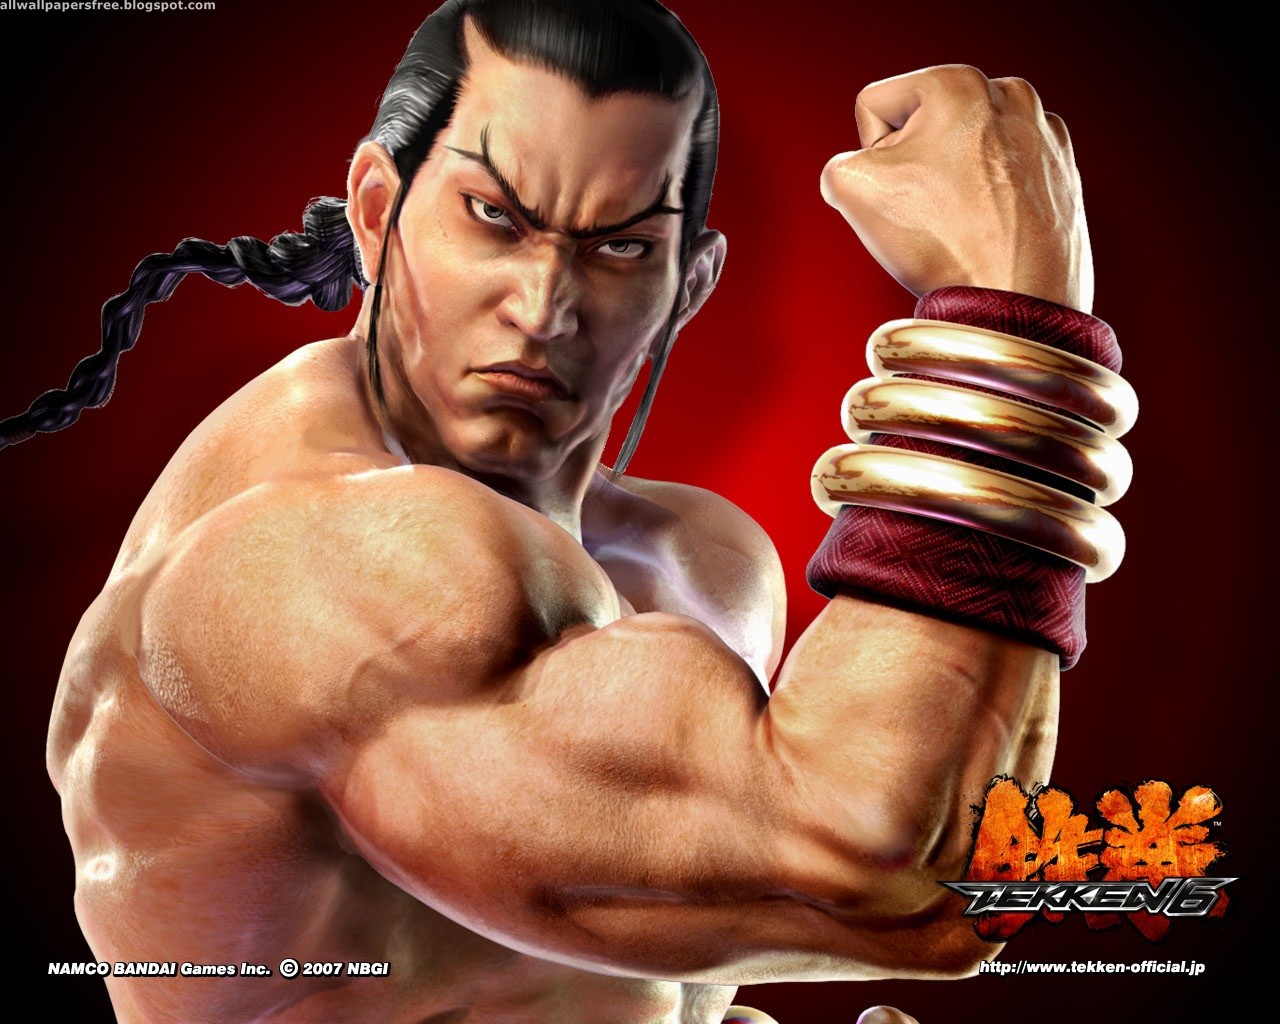 Descarga gratuita de fondo de pantalla para móvil de Videojuego, Tekken 6.